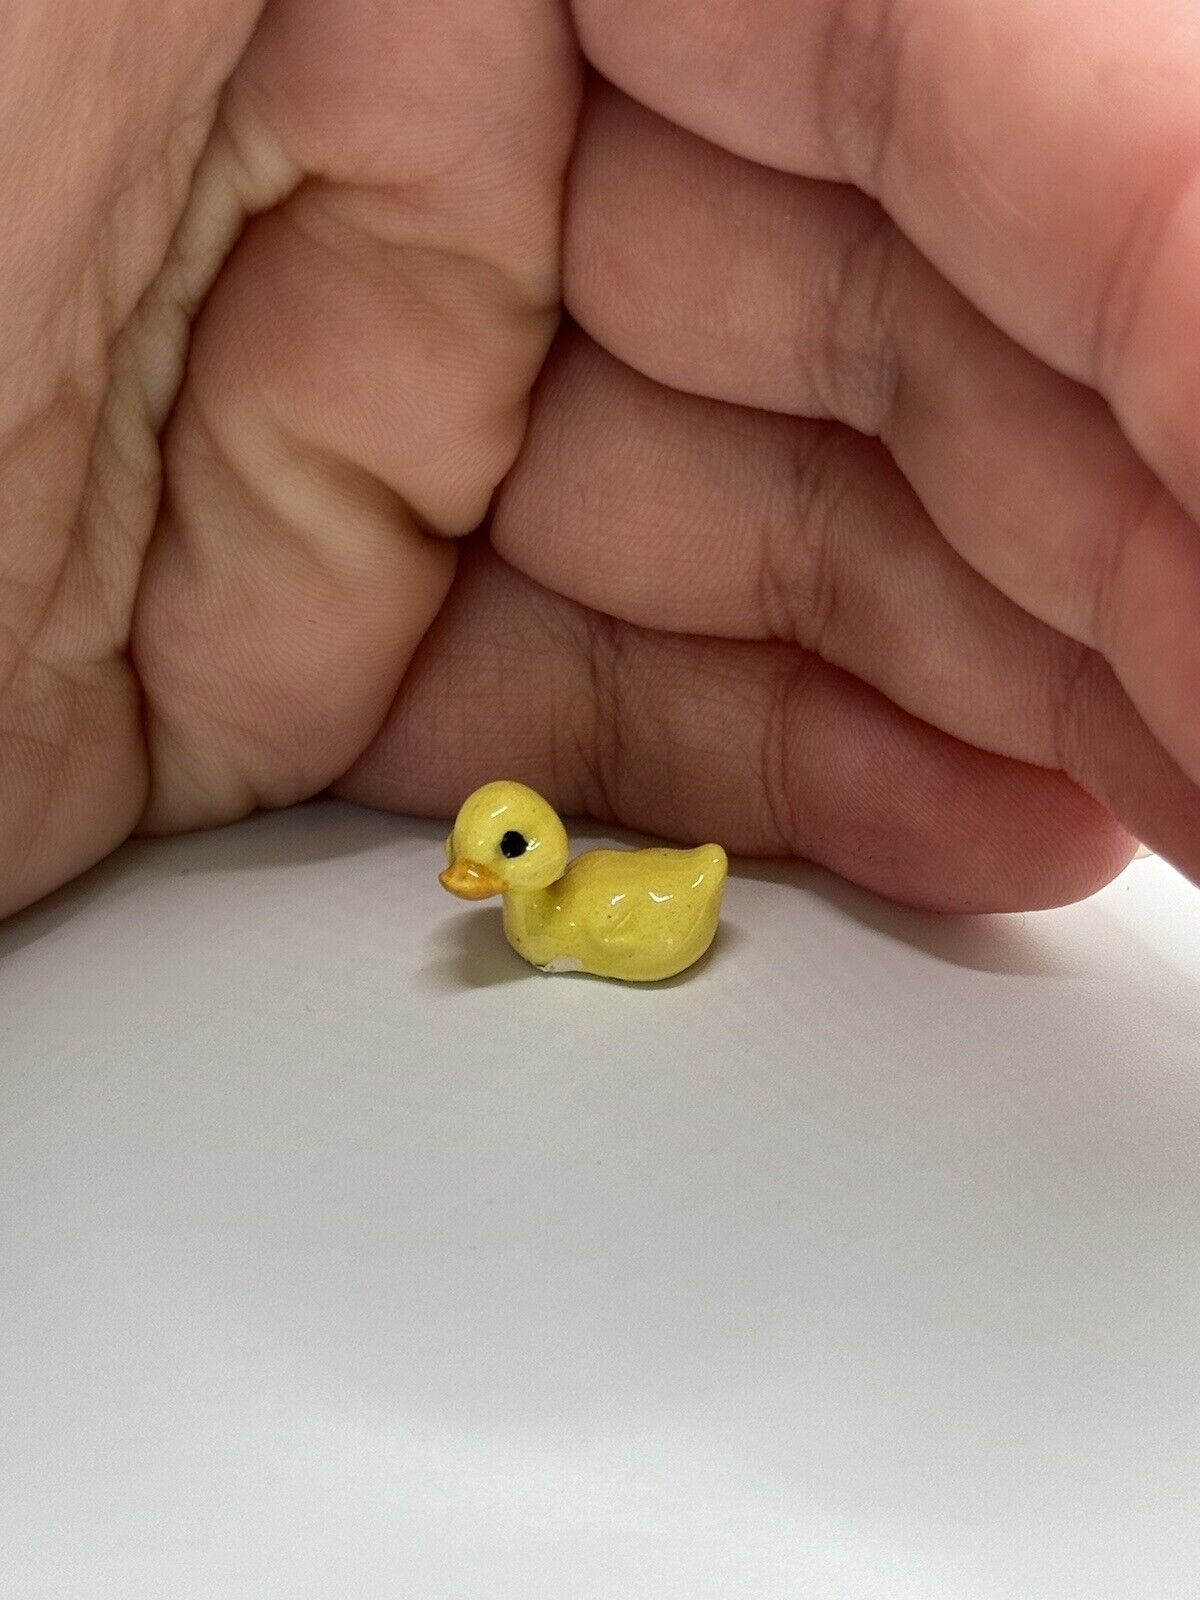 Vintage Retired Hagen Renaker Miniature Tiny Duckling Duck Figurine Trinket ***